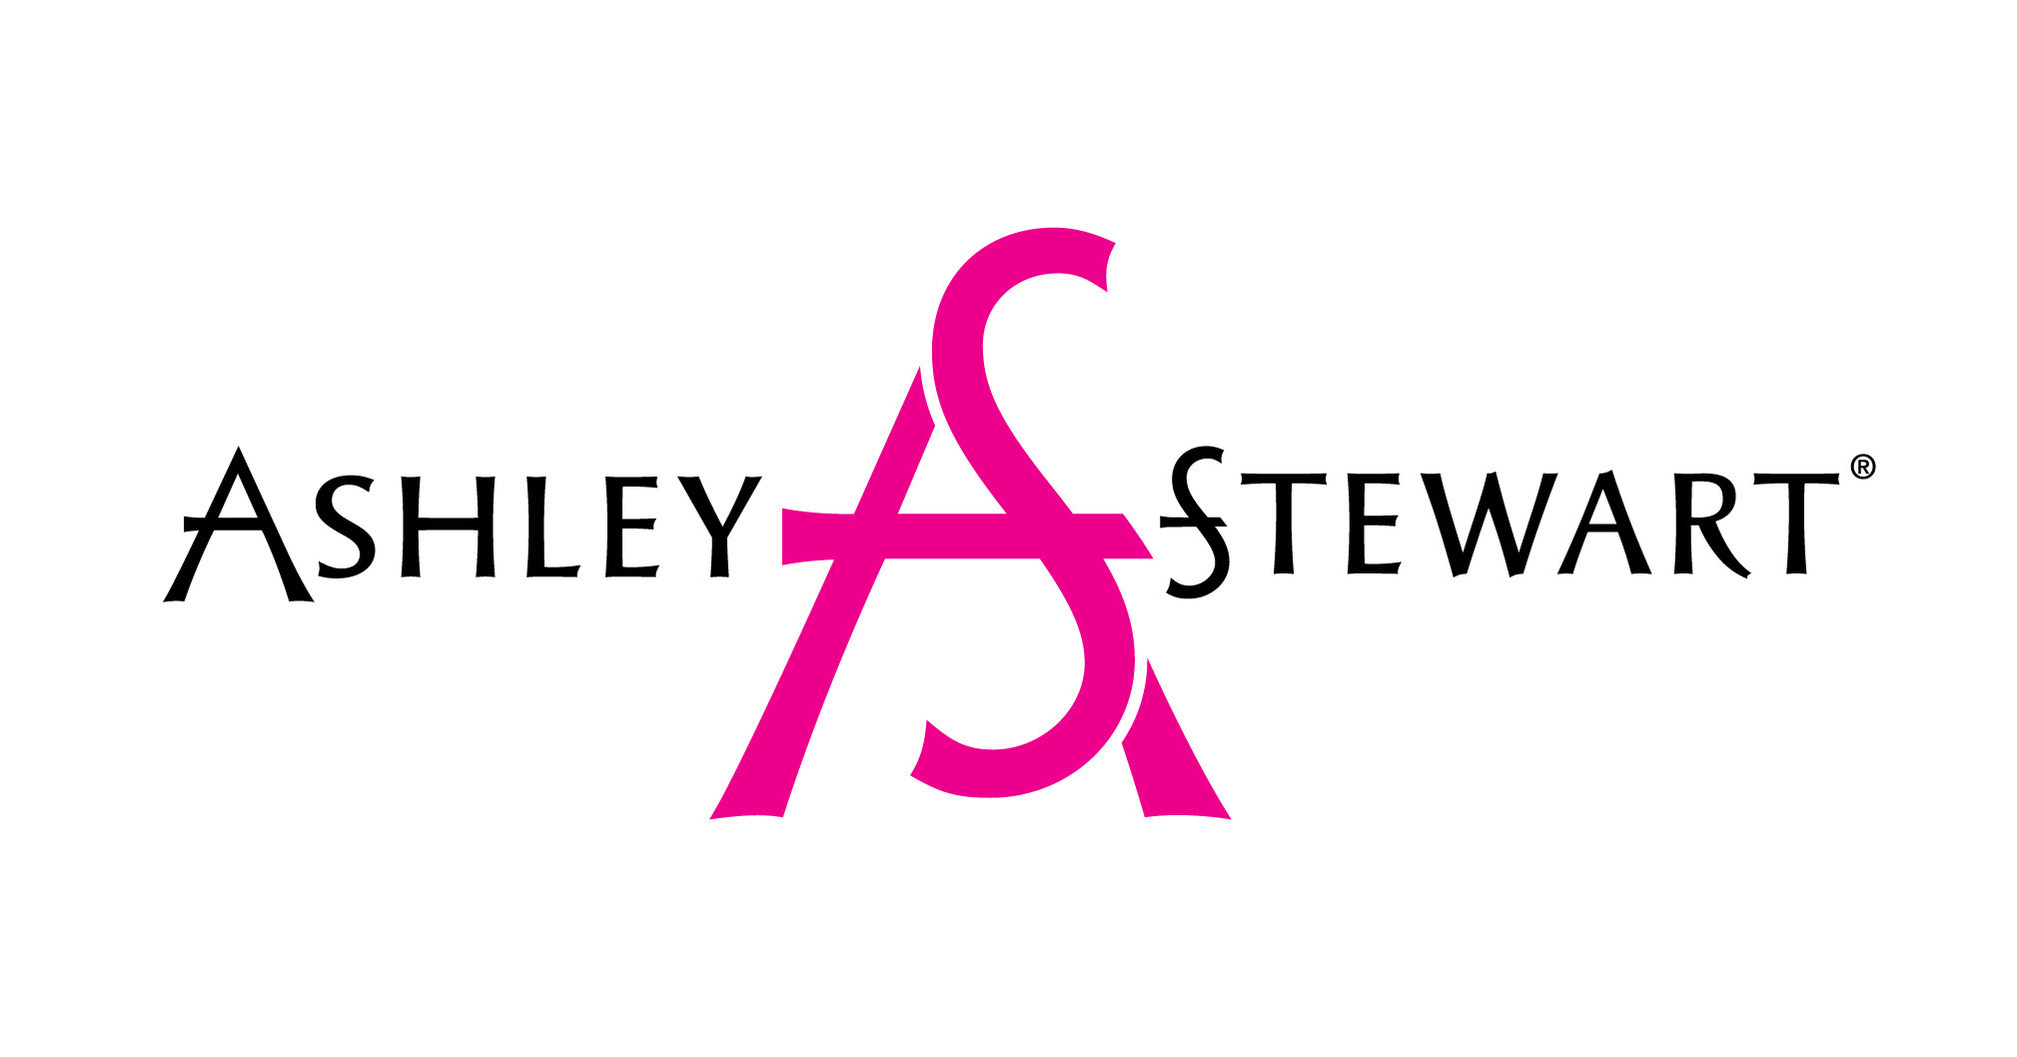 Plus-size retailer Ashley Stewart promotes empowerment to social